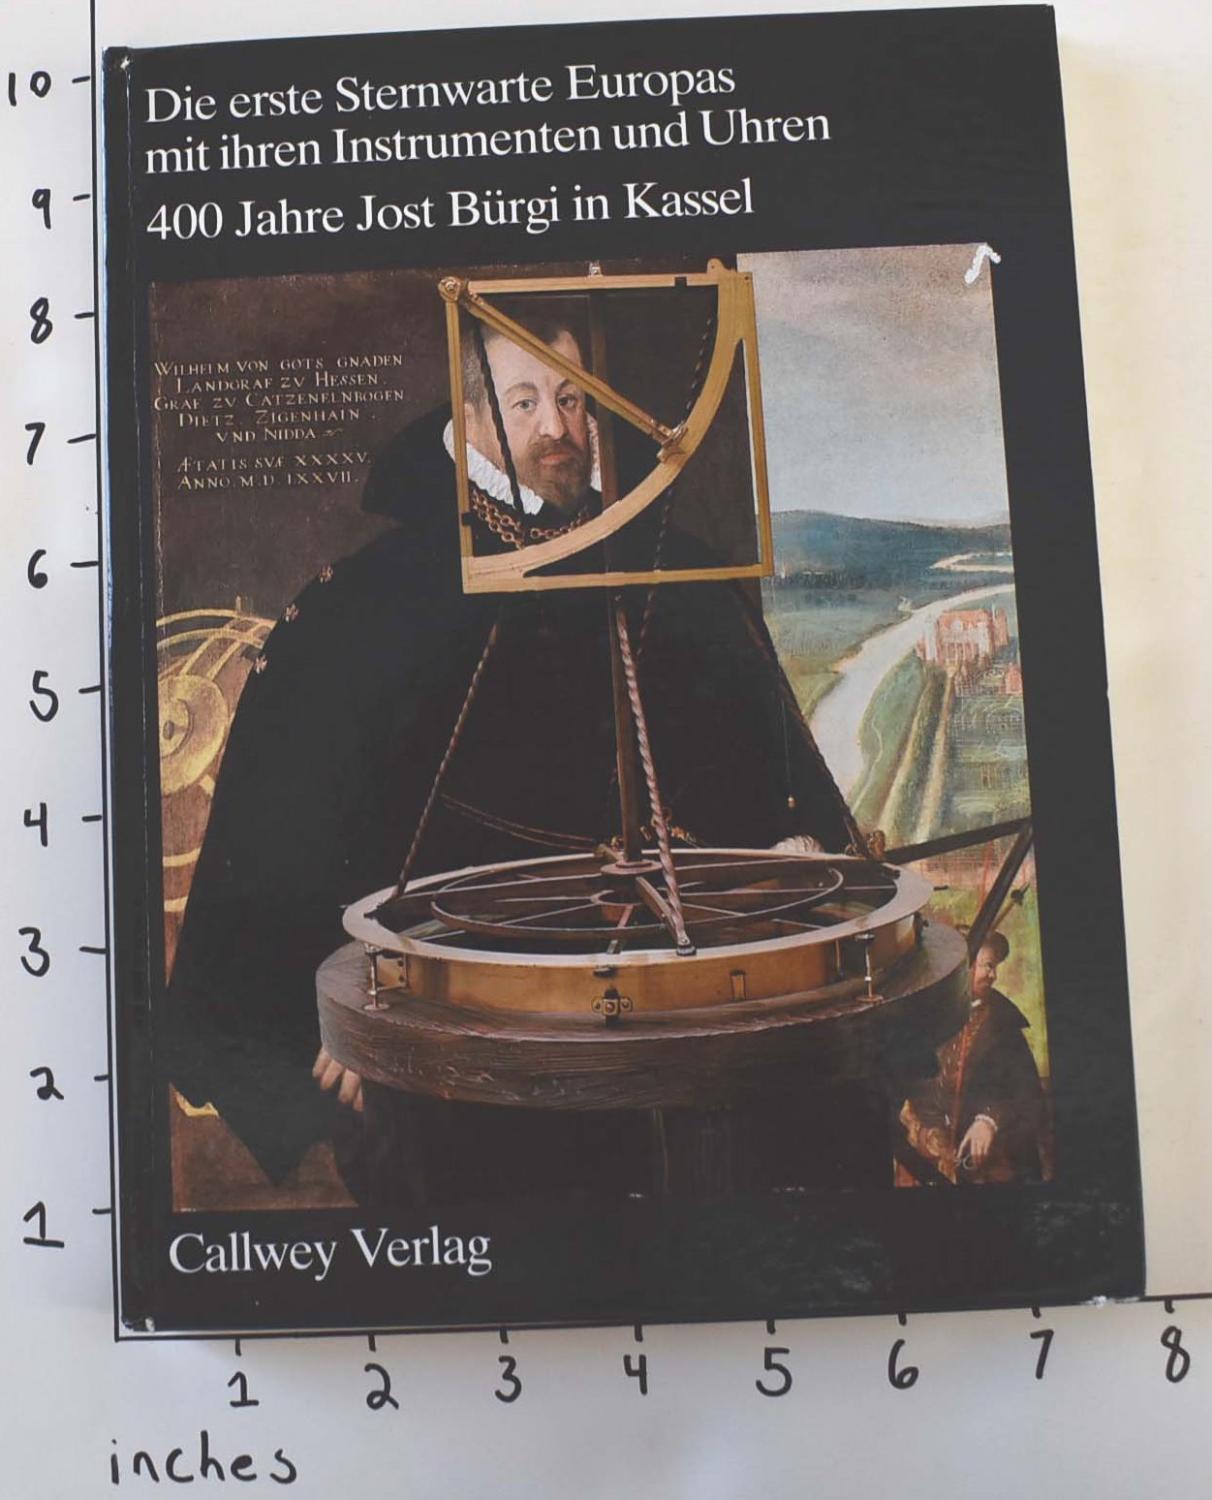 Die erste Sternwarte Europas mit ihren Instrumenten und Uhren: 400 Jahre Jost Bürgi in Kassel